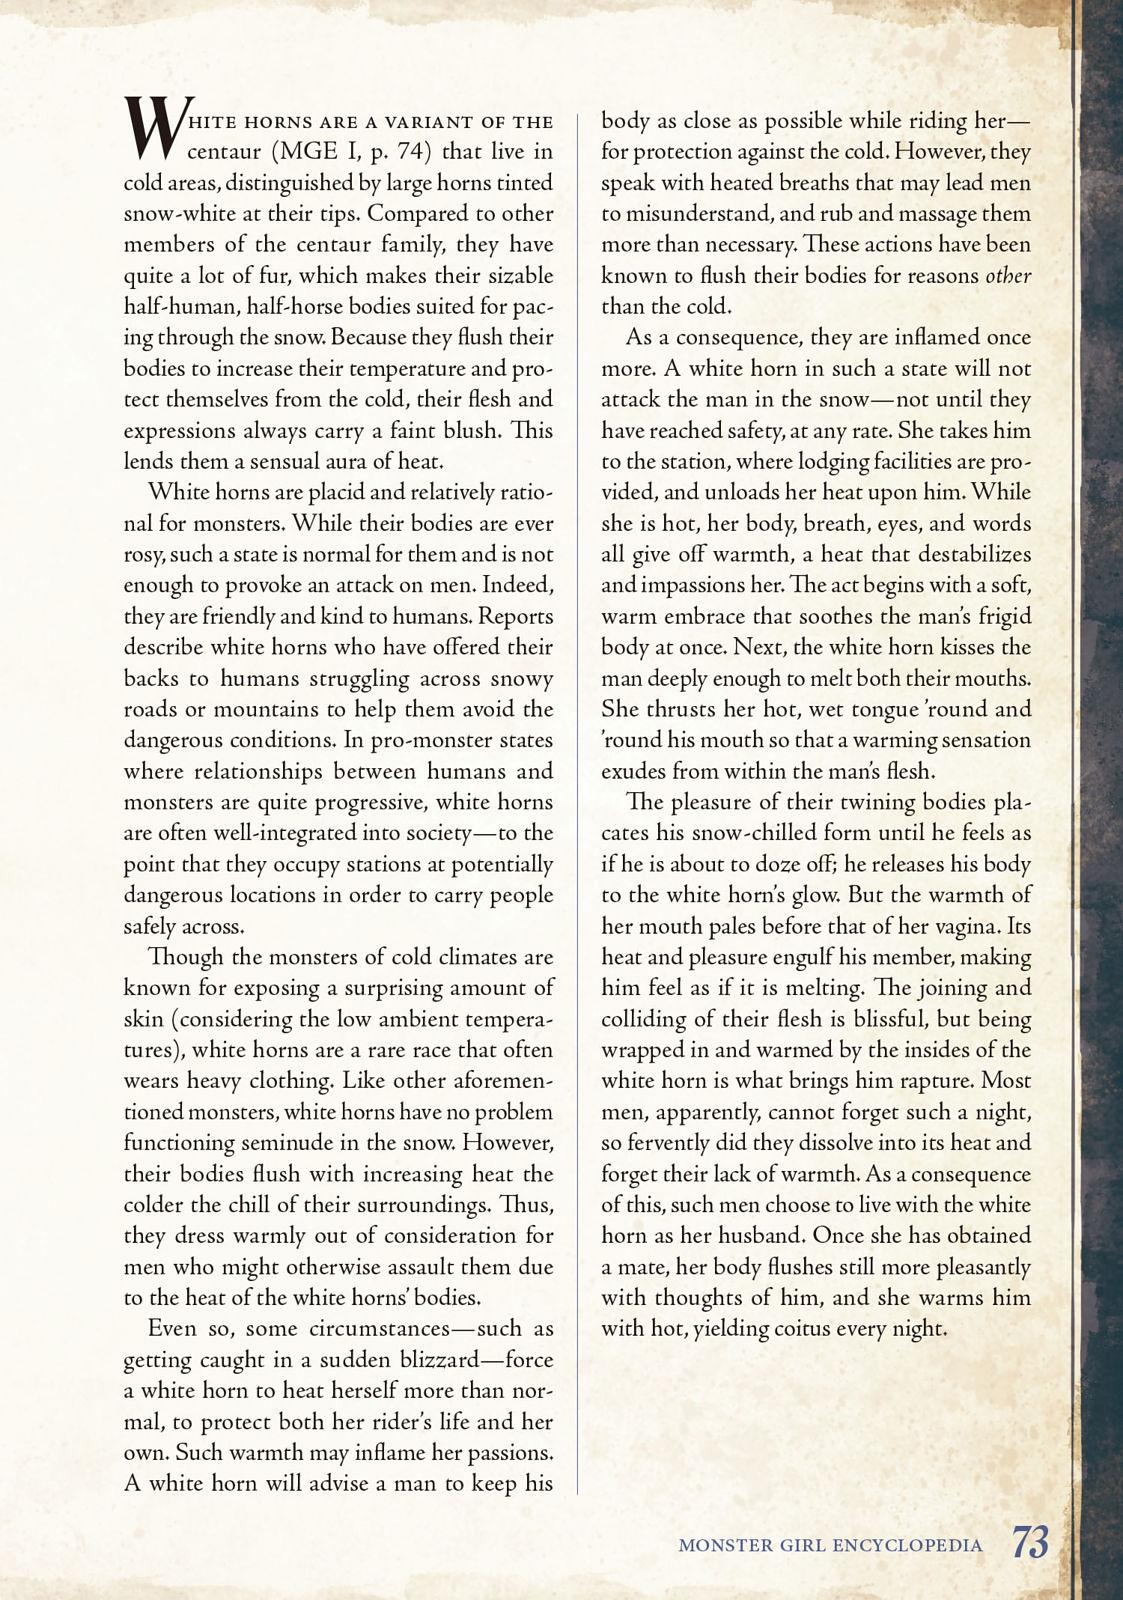 Monster Girl Encyclopedia Vol. 2 73